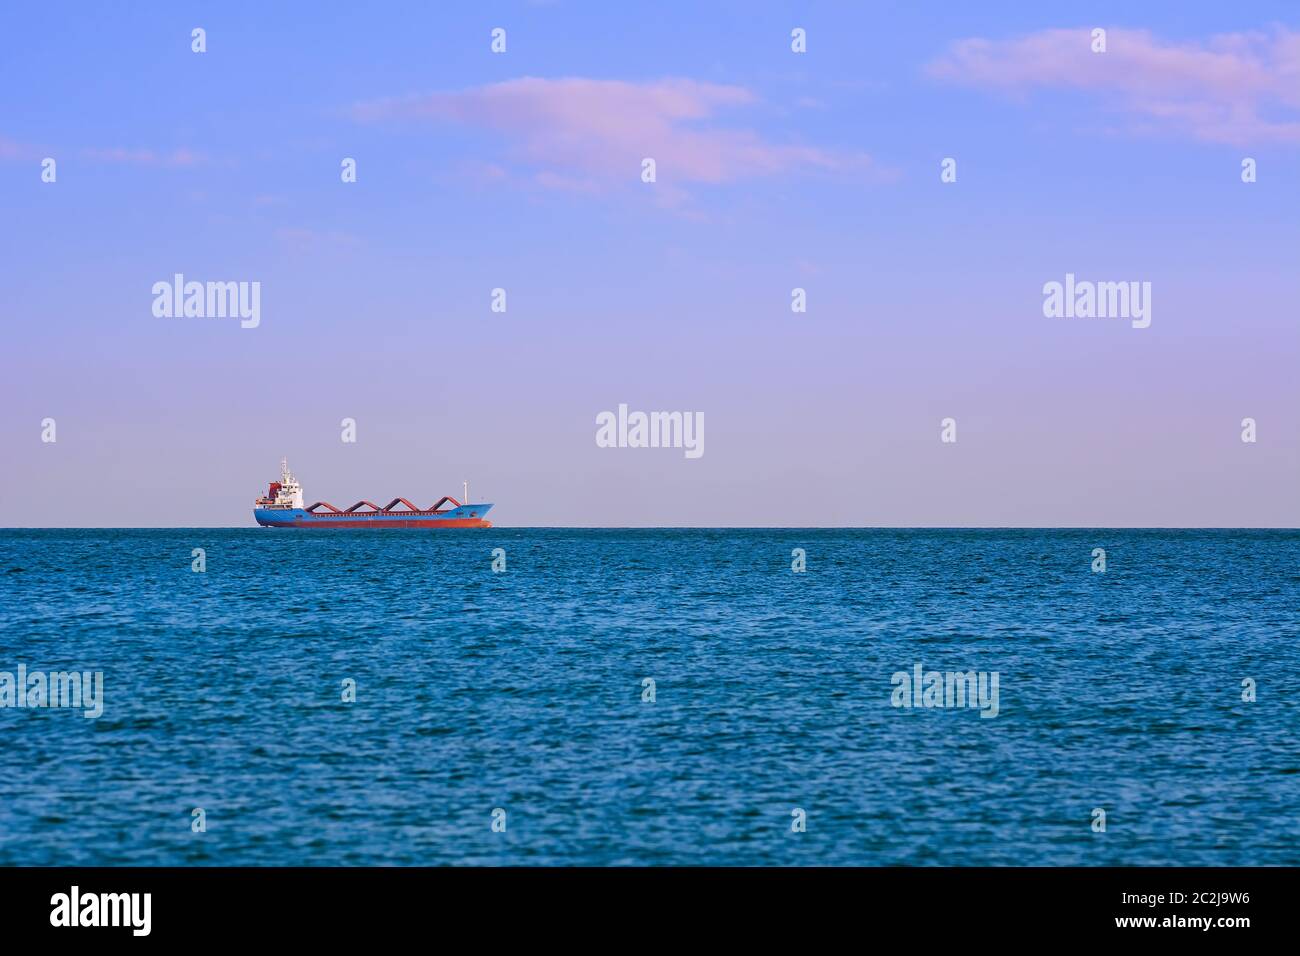 Cargo Ship in the Sea Stock Photo